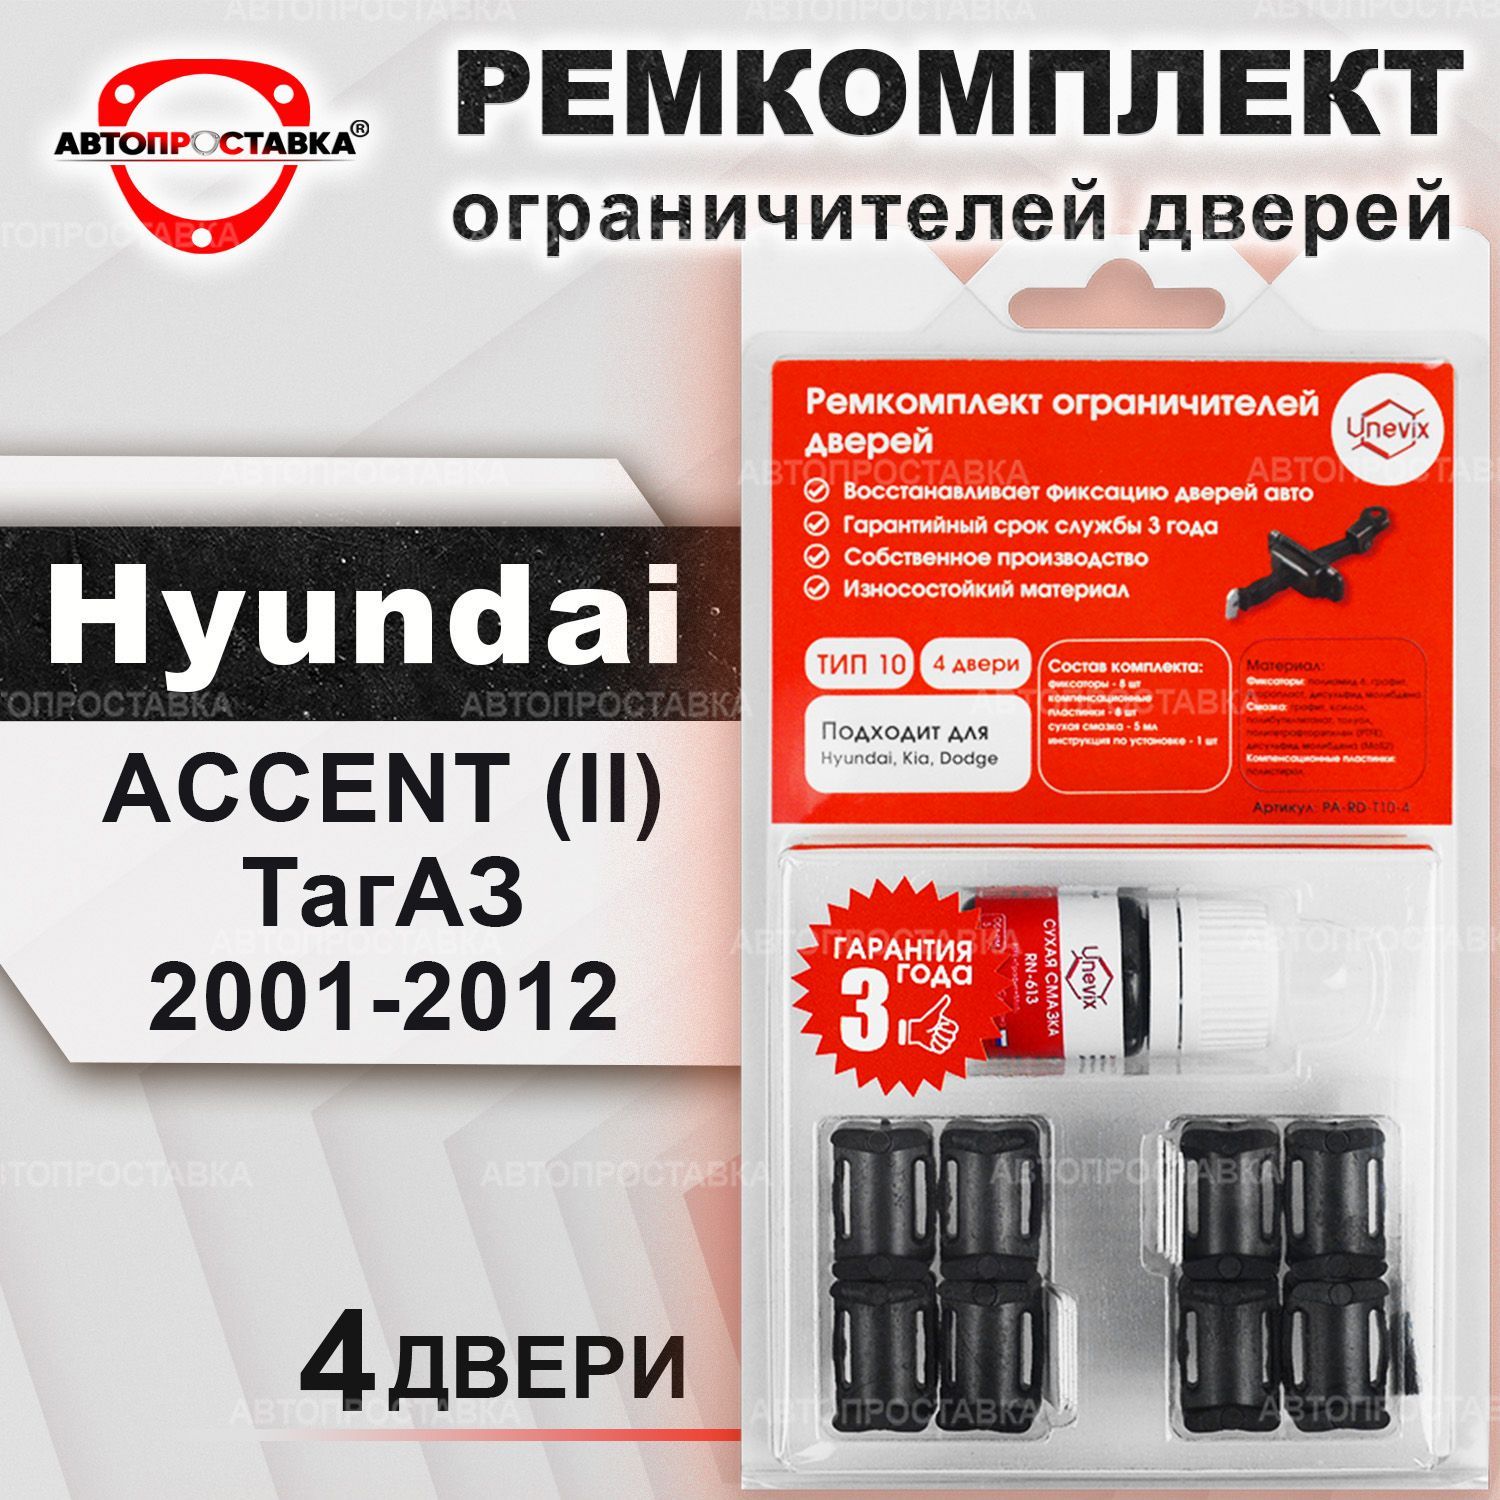 Ремкомплектограничителейна4дверидляHyundaiACCENT(II)ТагАЗ2001-2012/КомплектфиксатораХендайАкцентТАГАЗтип10